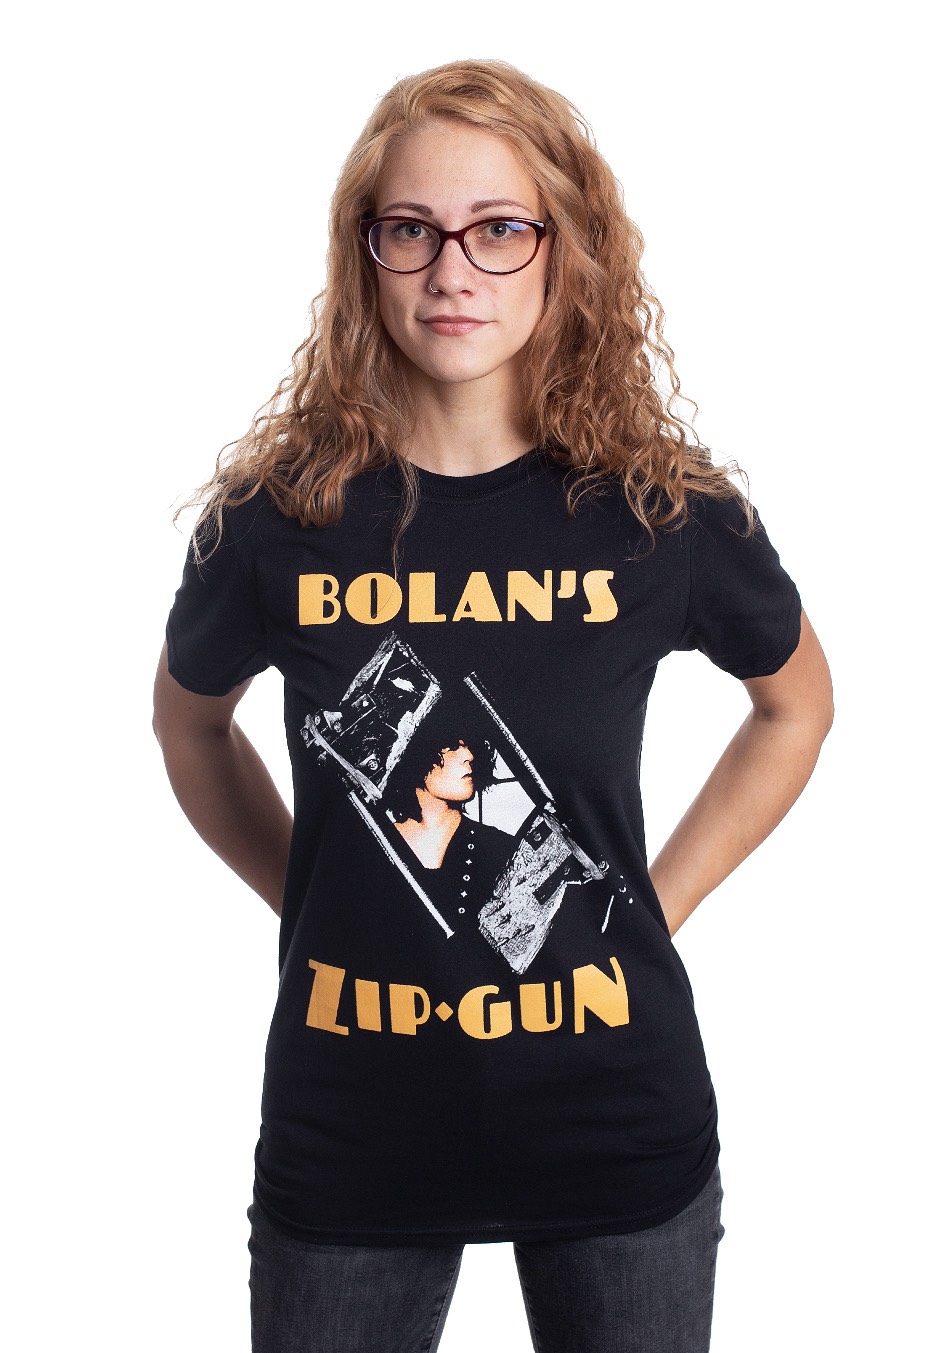 T. Rex - Bolans Zip Gun - - T-Shirts